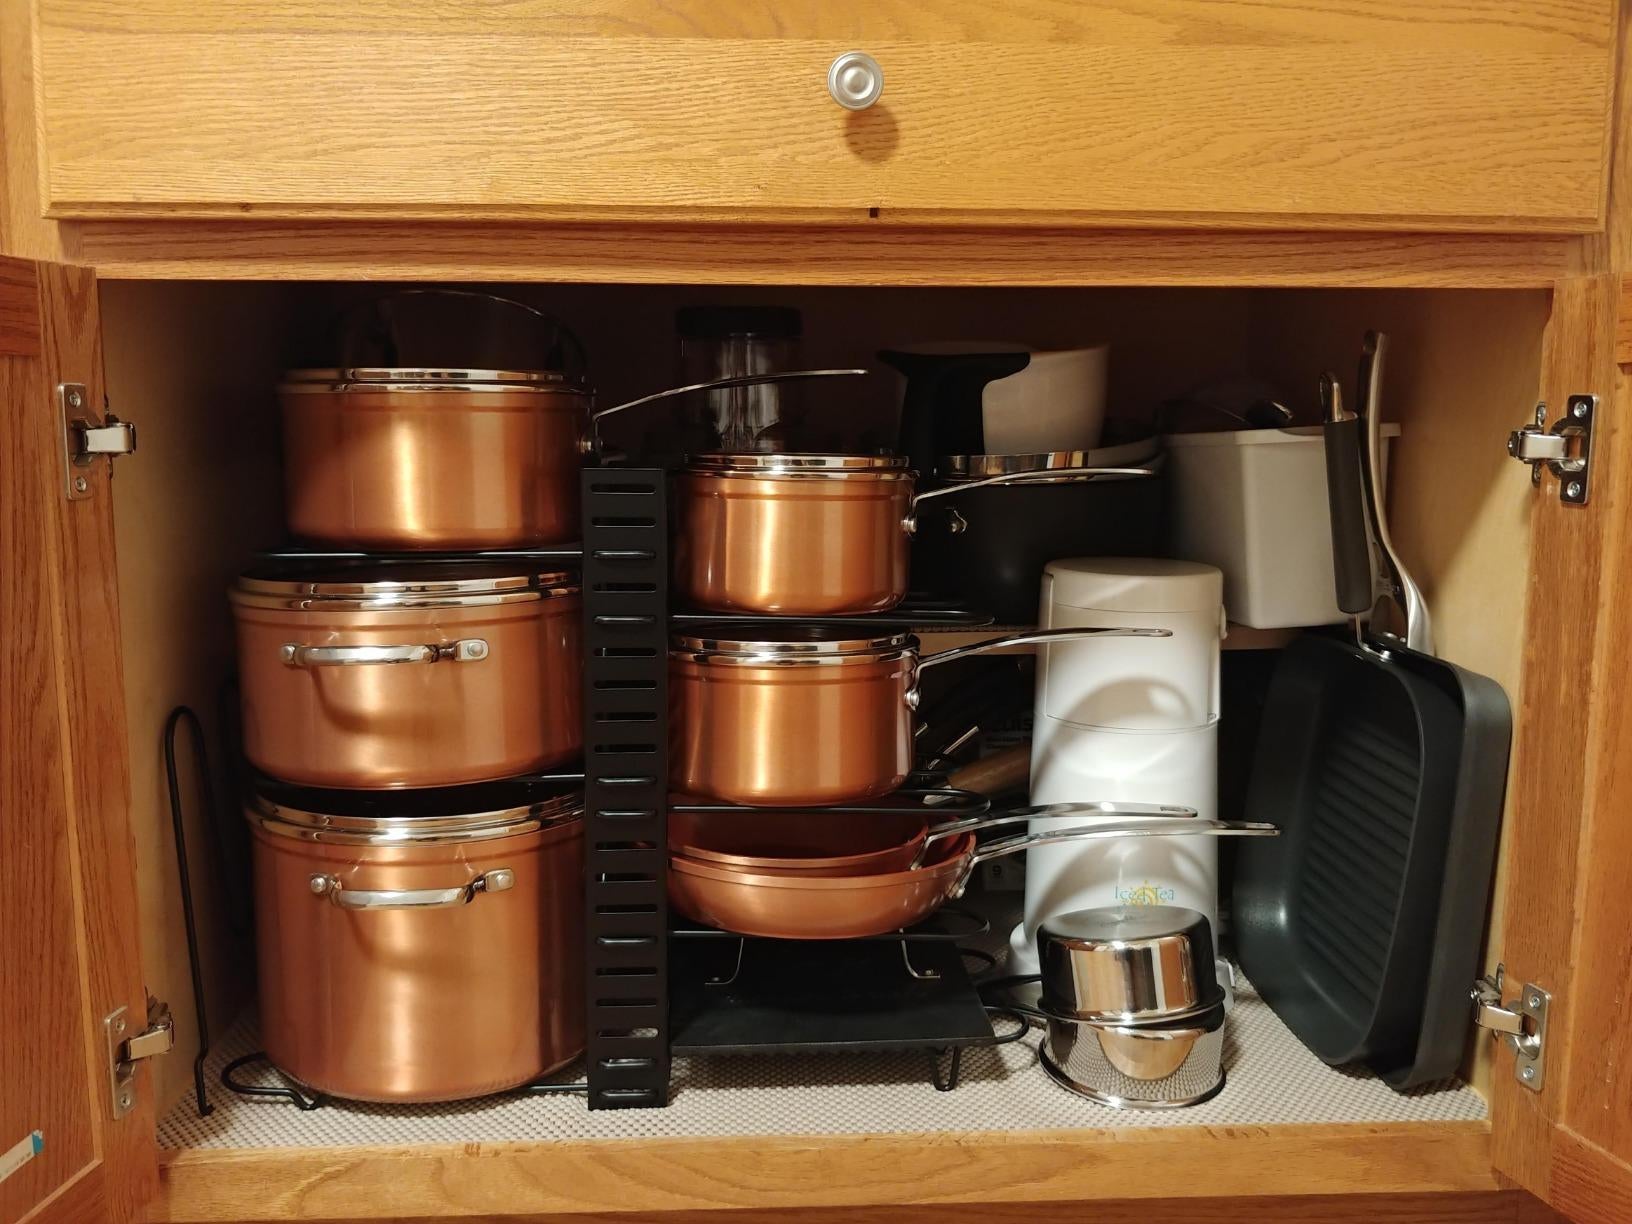 Best kitchen cabinet organizers to restore order ASAP